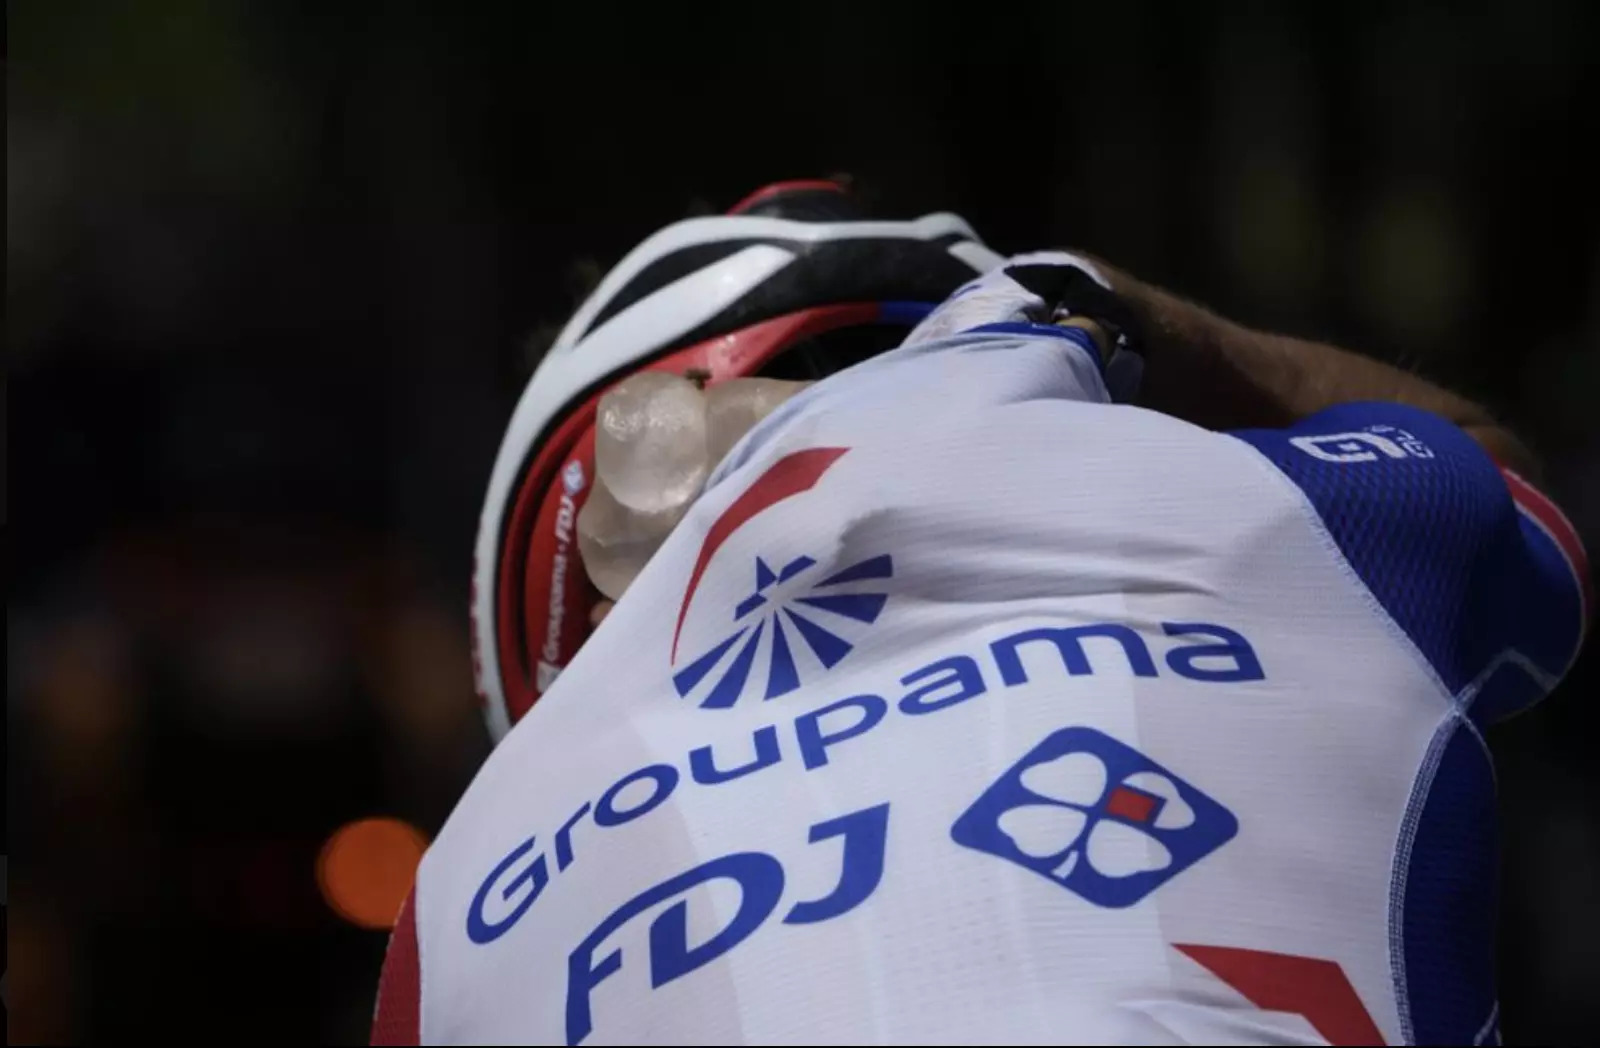 Vận động viên tham gia Tour de France hạ nhiệt bằng các túi đá gắn dưới quần áo. Ảnh: AP